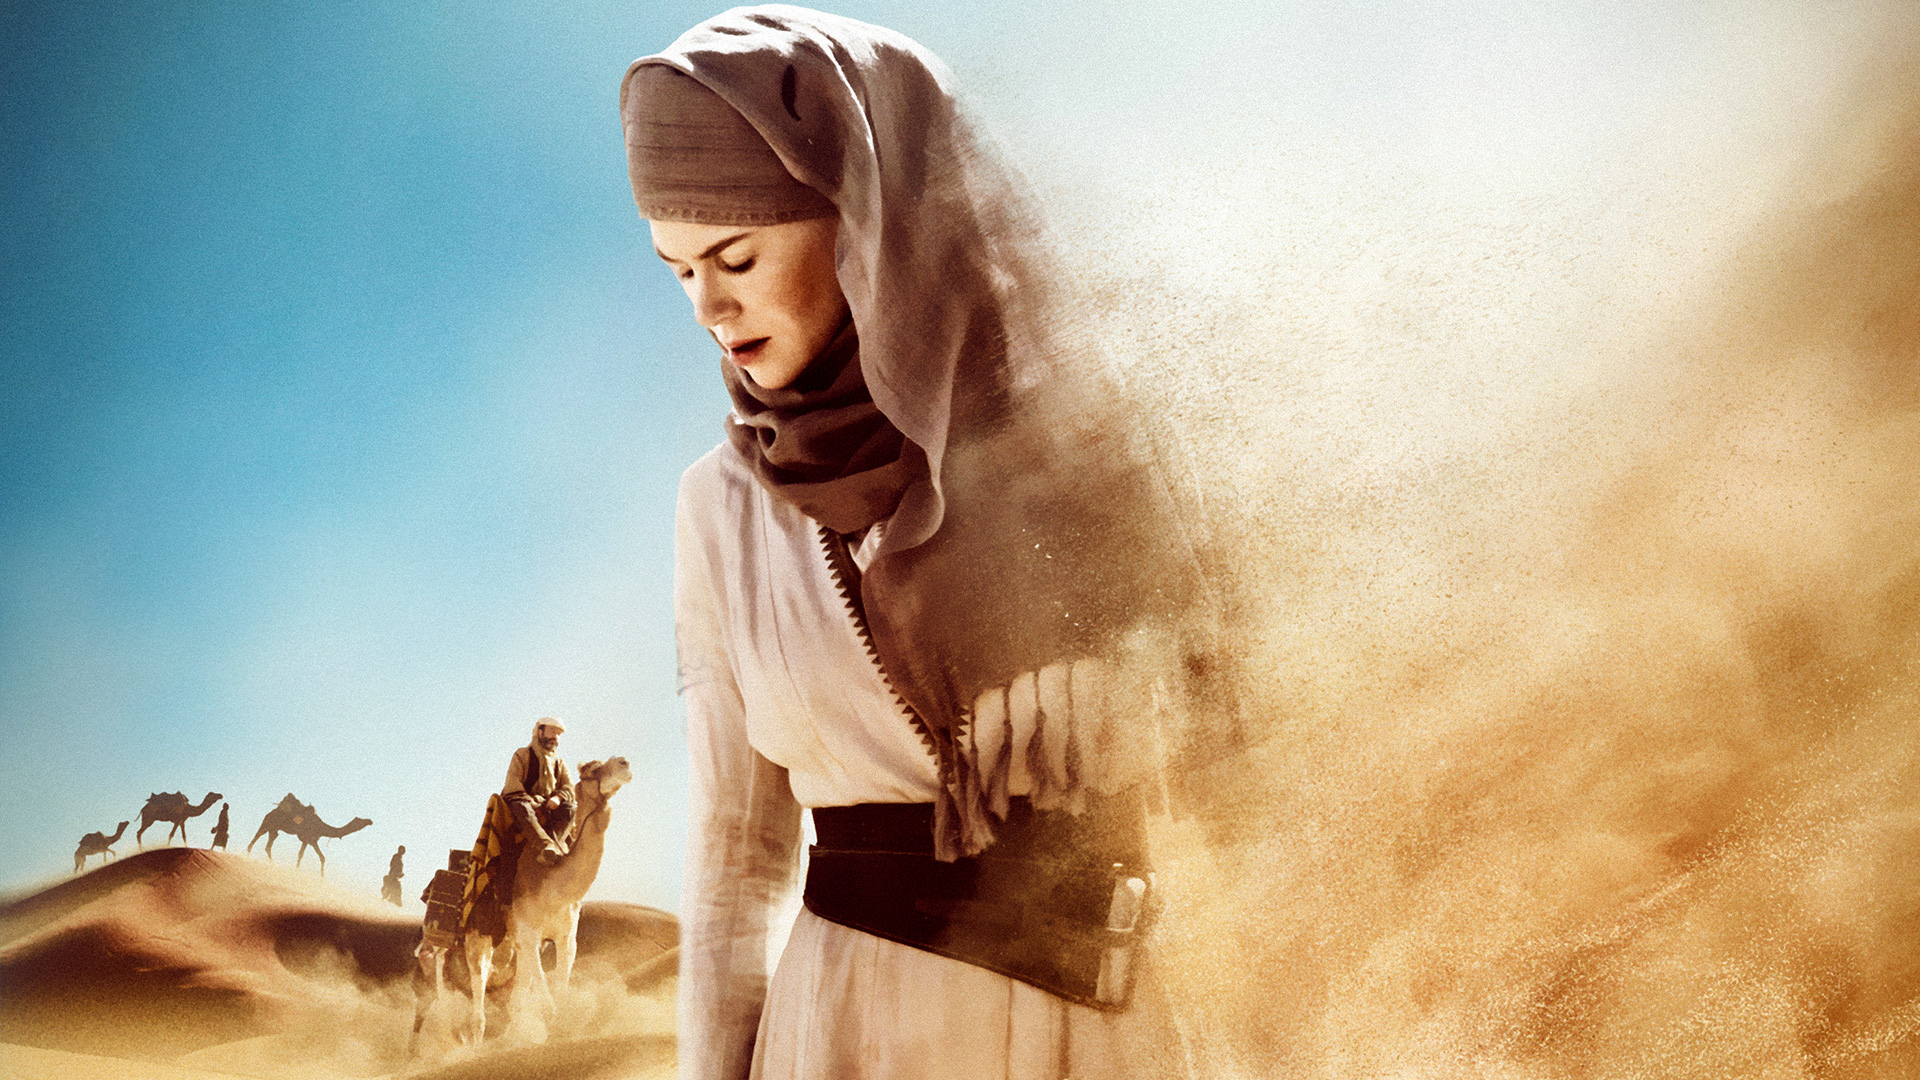 Wallpaper Nicole Kidman in Queen of the Desert, 2015 movie